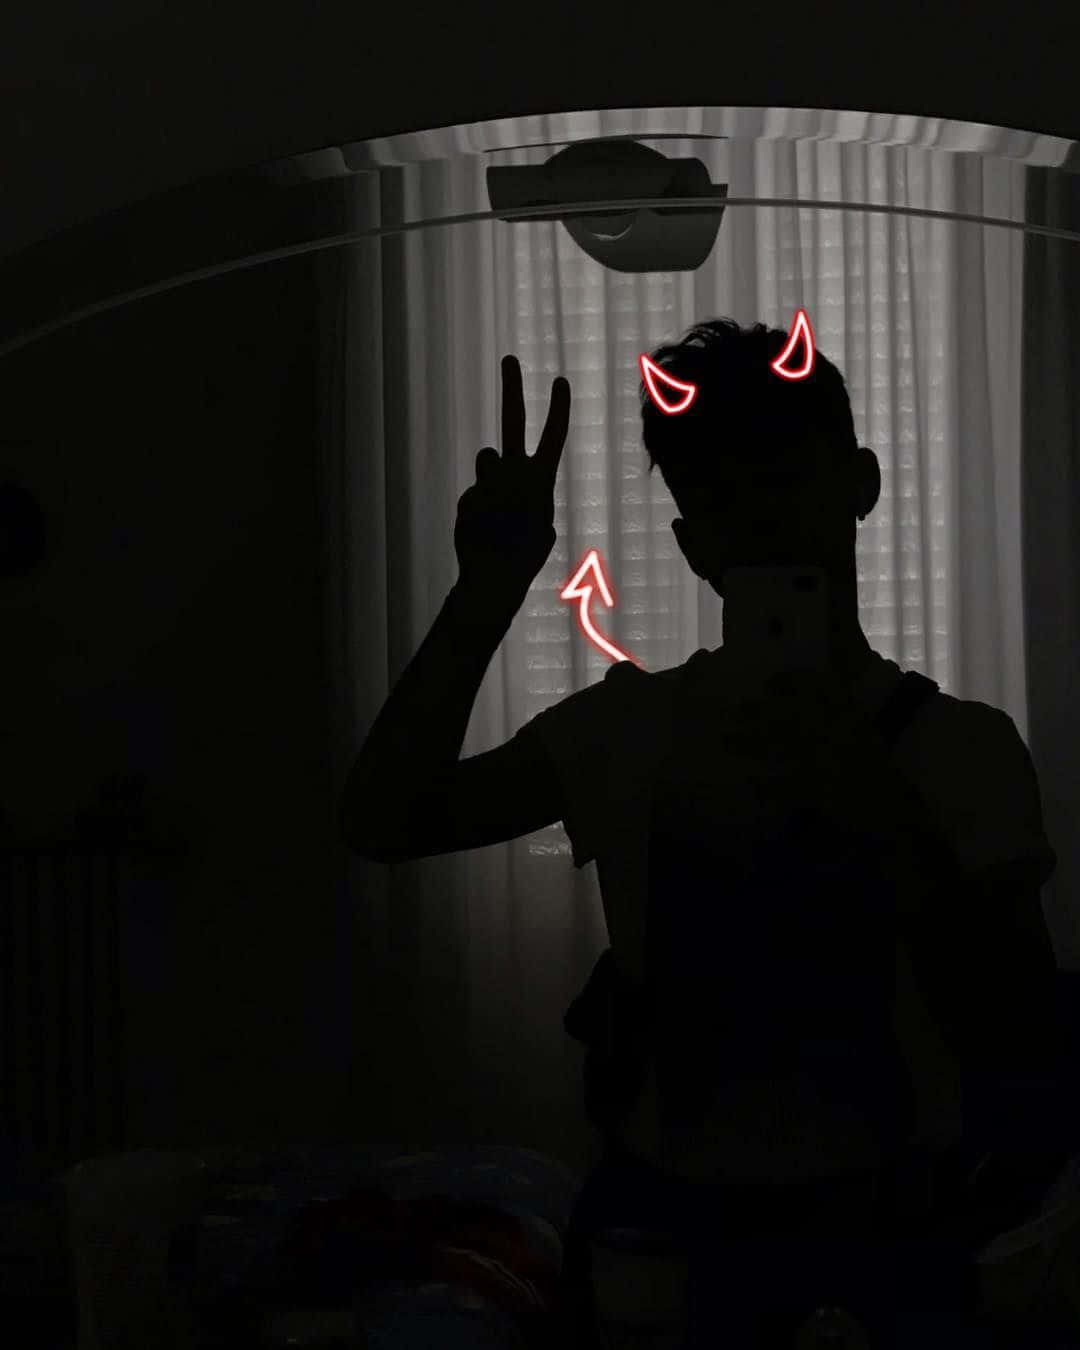 Aesthetic Instagram Devil Man Silhouette Background